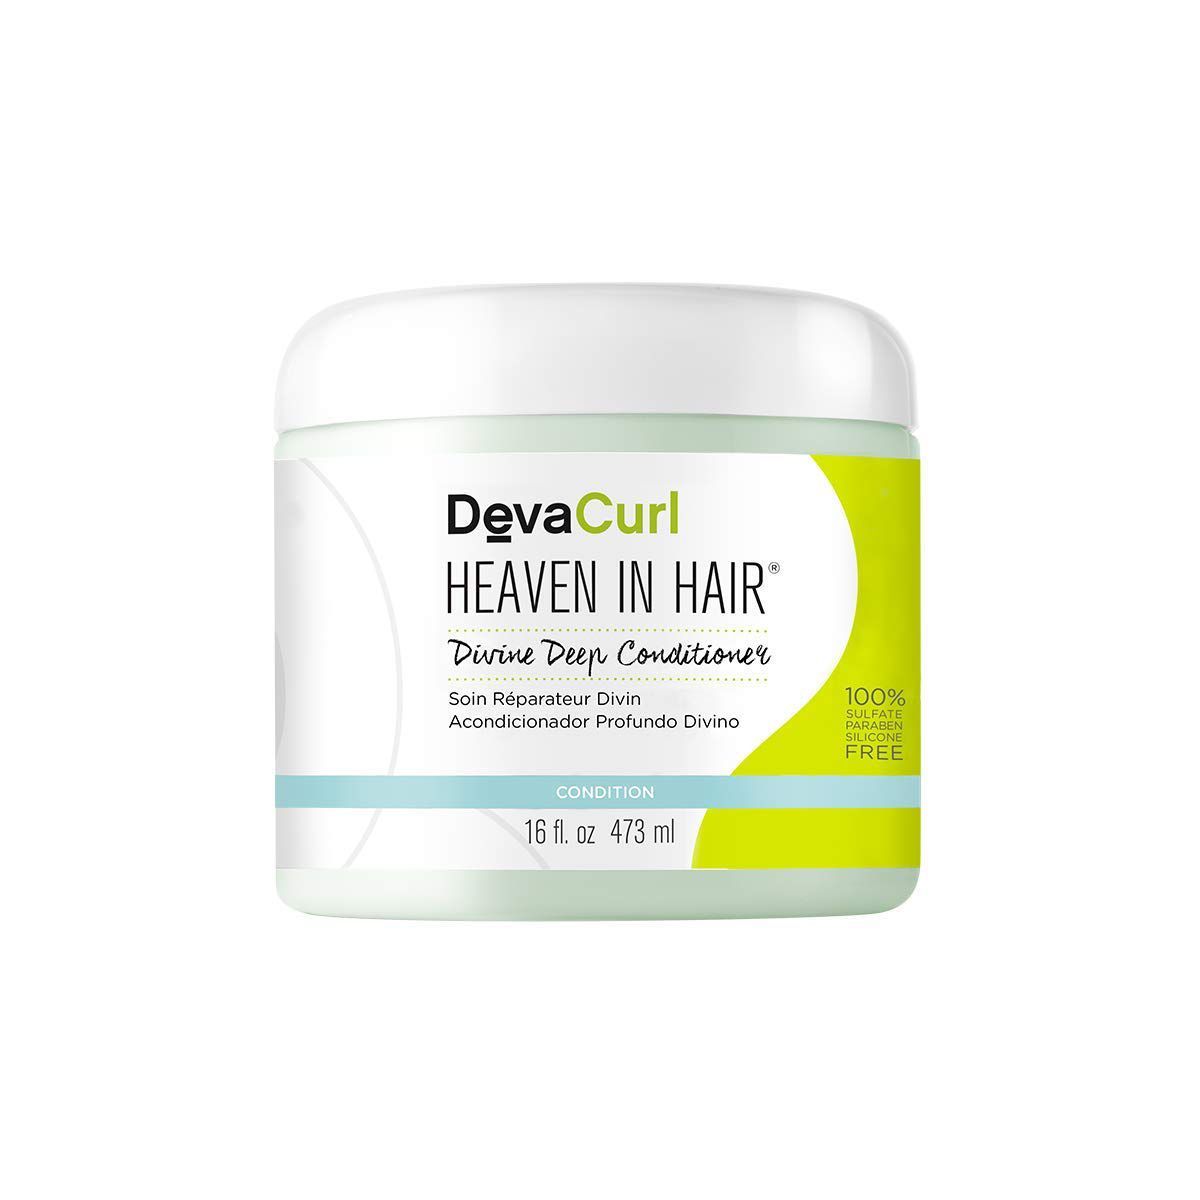 DevaCurl Heaven in Hair